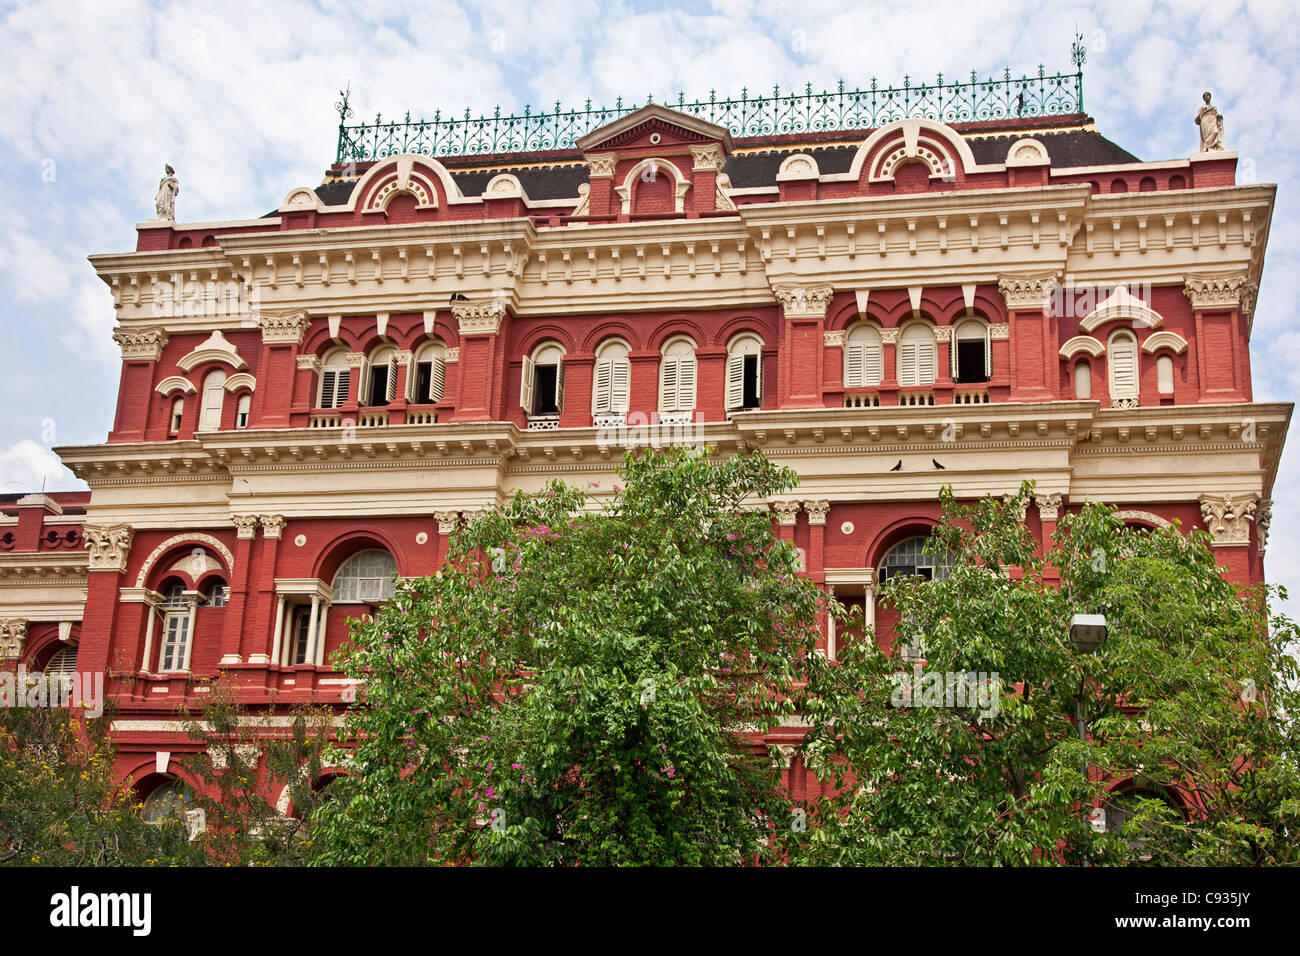 Le magnifique bâtiment d'écrivains dans le BBD Bagh district de Calcutta a été construit en 1780 pour les commis de la Compagnie des Indes. Banque D'Images